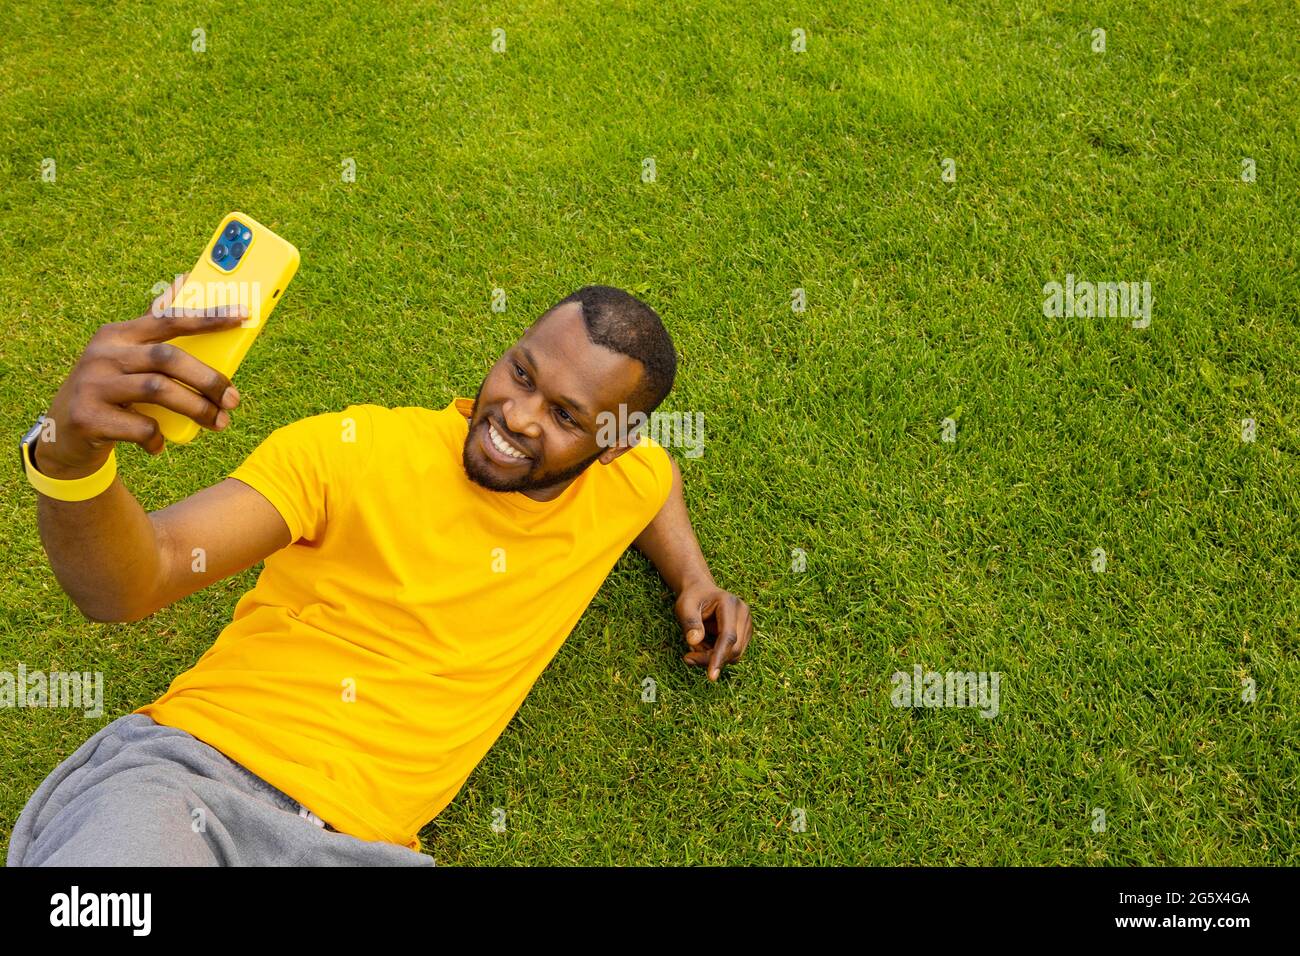 Fröhlicher, hübscher afro-amerikanischer Mann, der auf dem Gras liegt, sich entspannt und nach dem Sport eine Pause macht. Lächelnder schwarzer Kerl, der online mit spricht Stockfoto